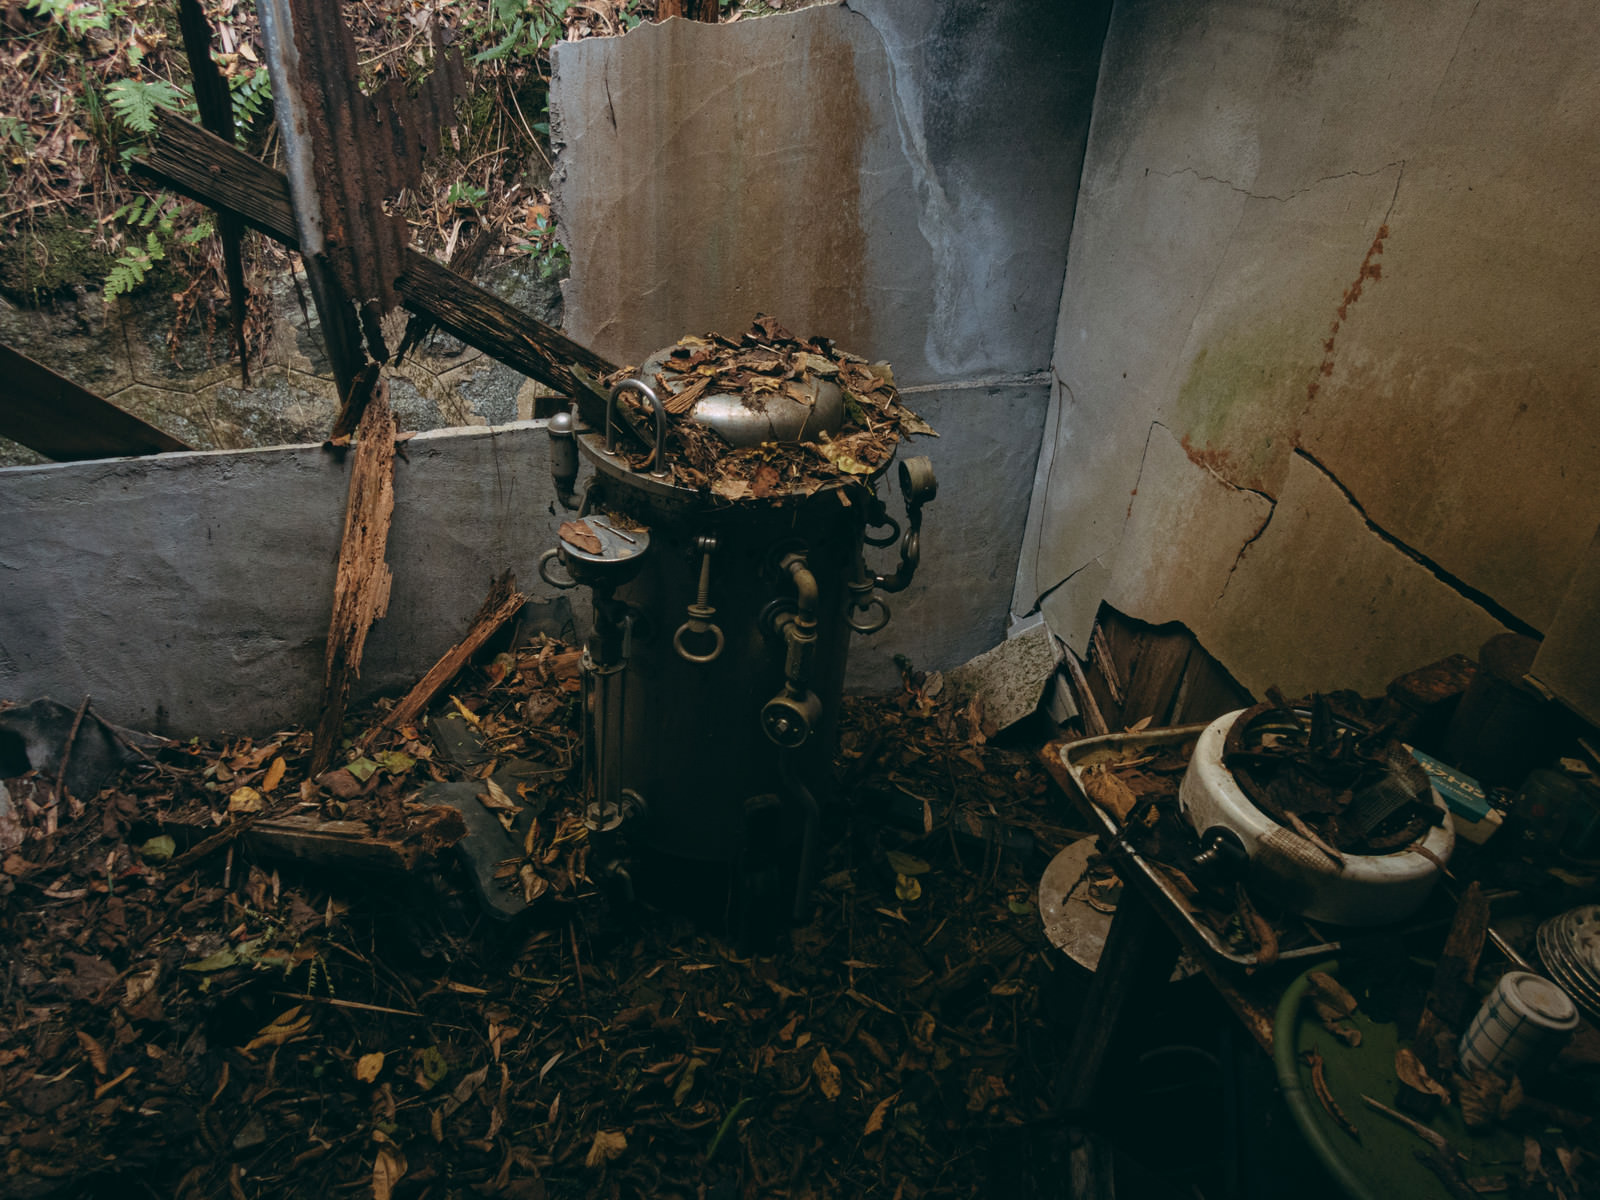 「瓦礫と落葉で埋め尽くされた部屋 | フリー素材のぱくたそ」の写真